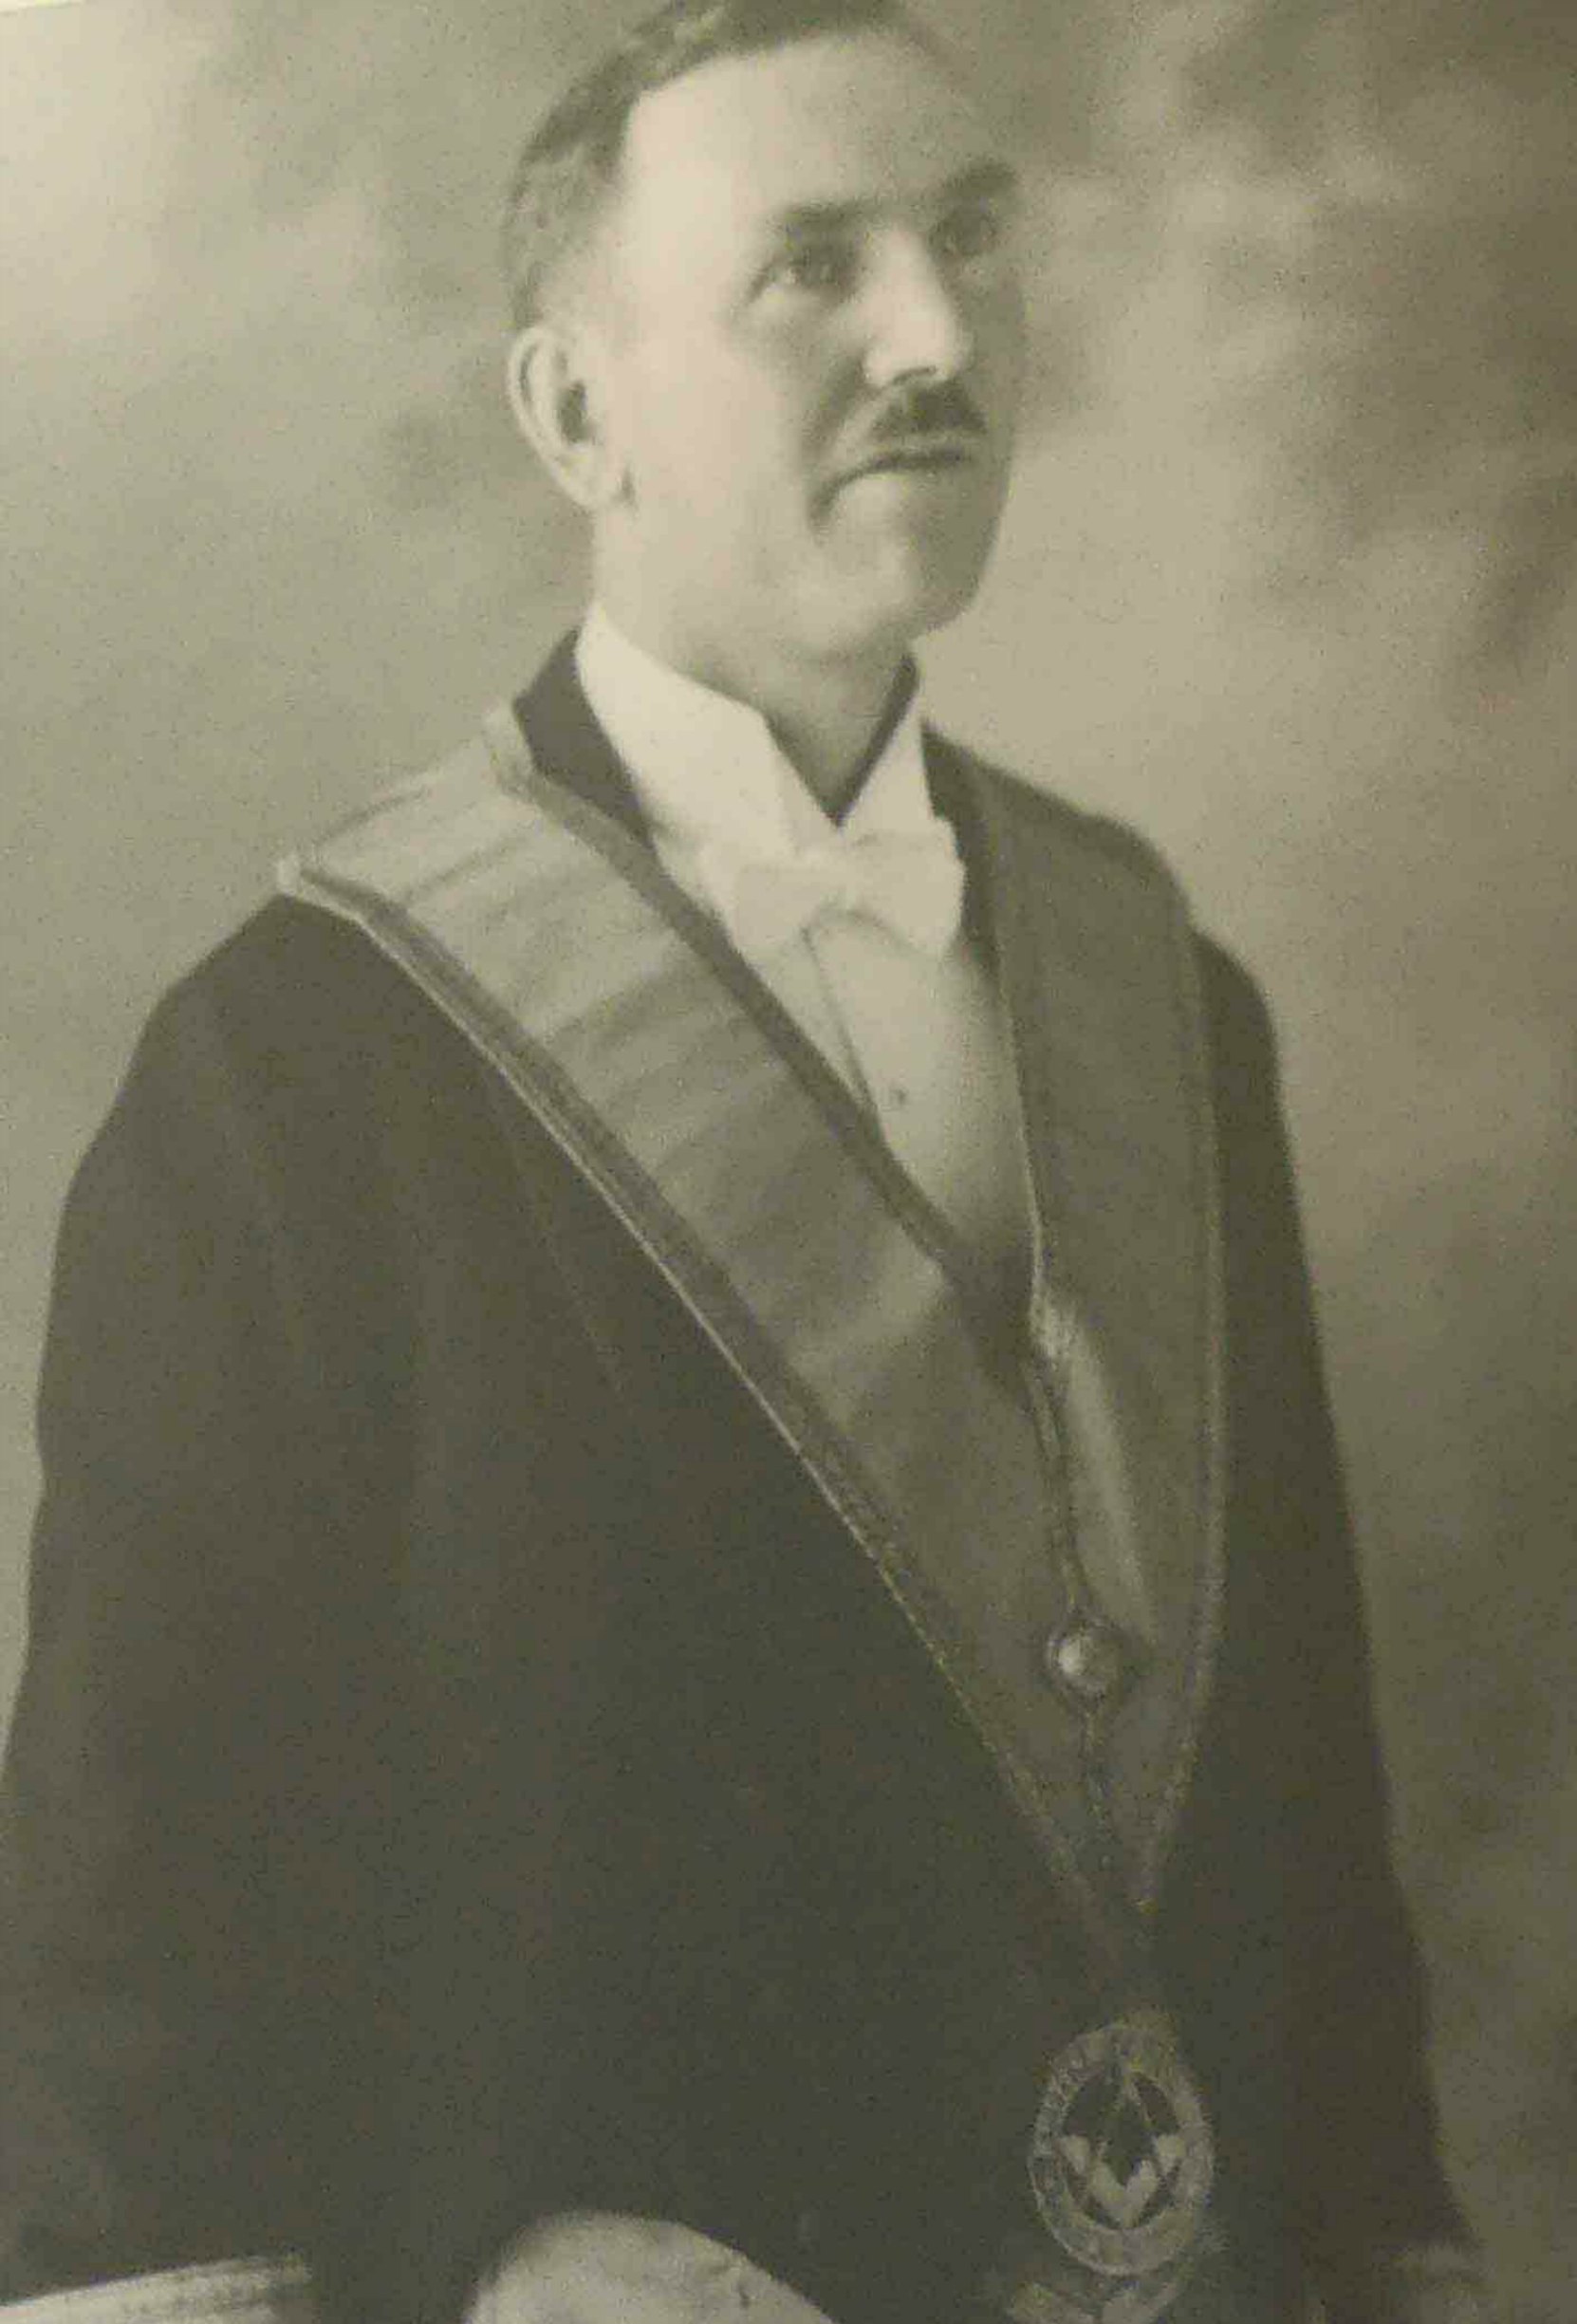 Hugh George Savage in Masonic regalia, circa 1932.